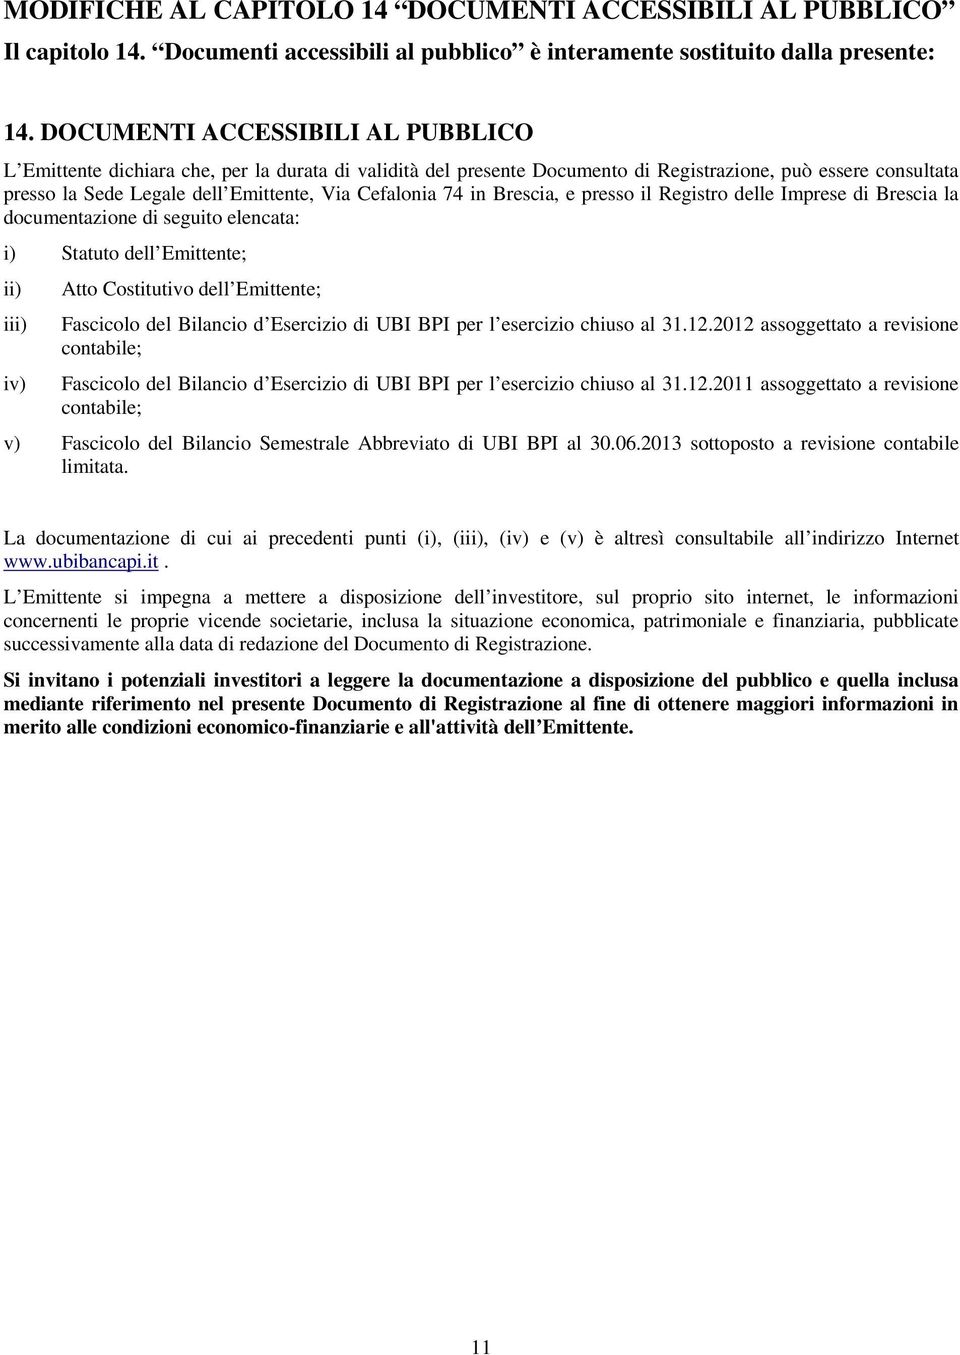 Cefalonia 74 in Brescia, e presso il Registro delle Imprese di Brescia la documentazione di seguito elencata: i) Statuto dell Emittente; ii) Atto Costitutivo dell Emittente; iii) Fascicolo del